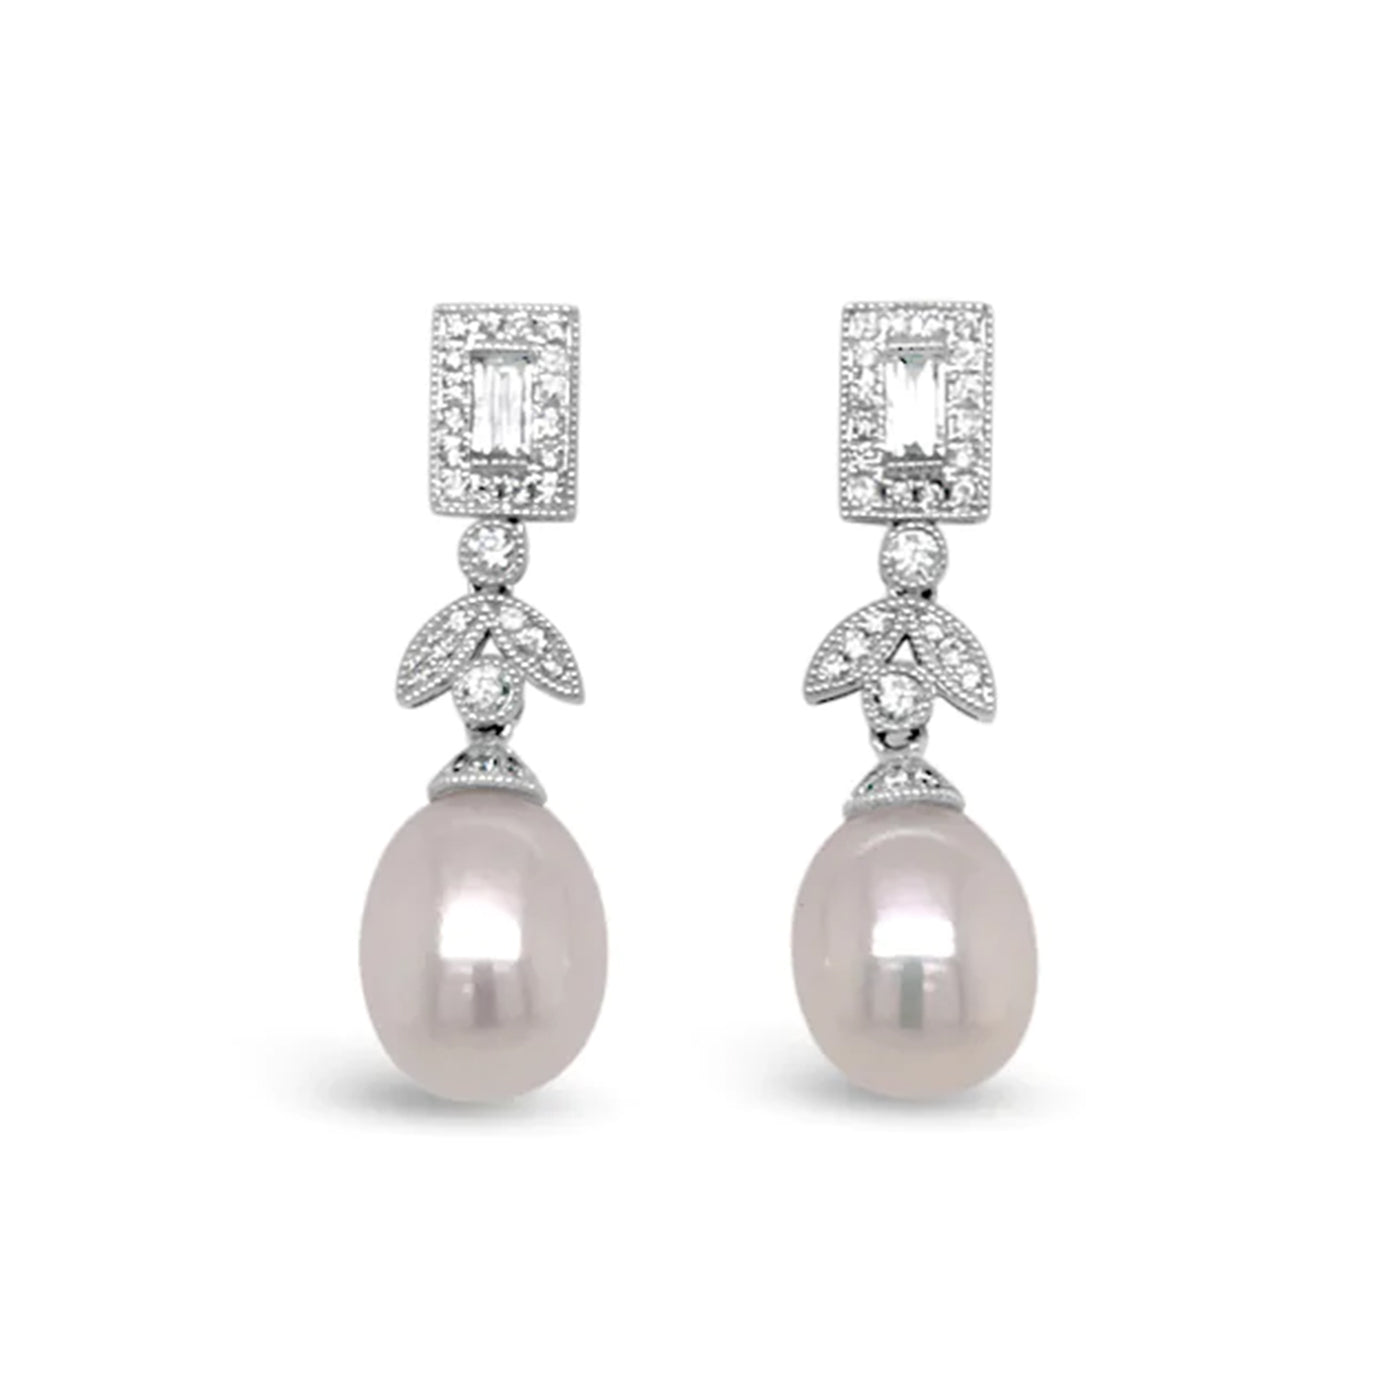 18kw Diamond and Pearl Stud Earrings